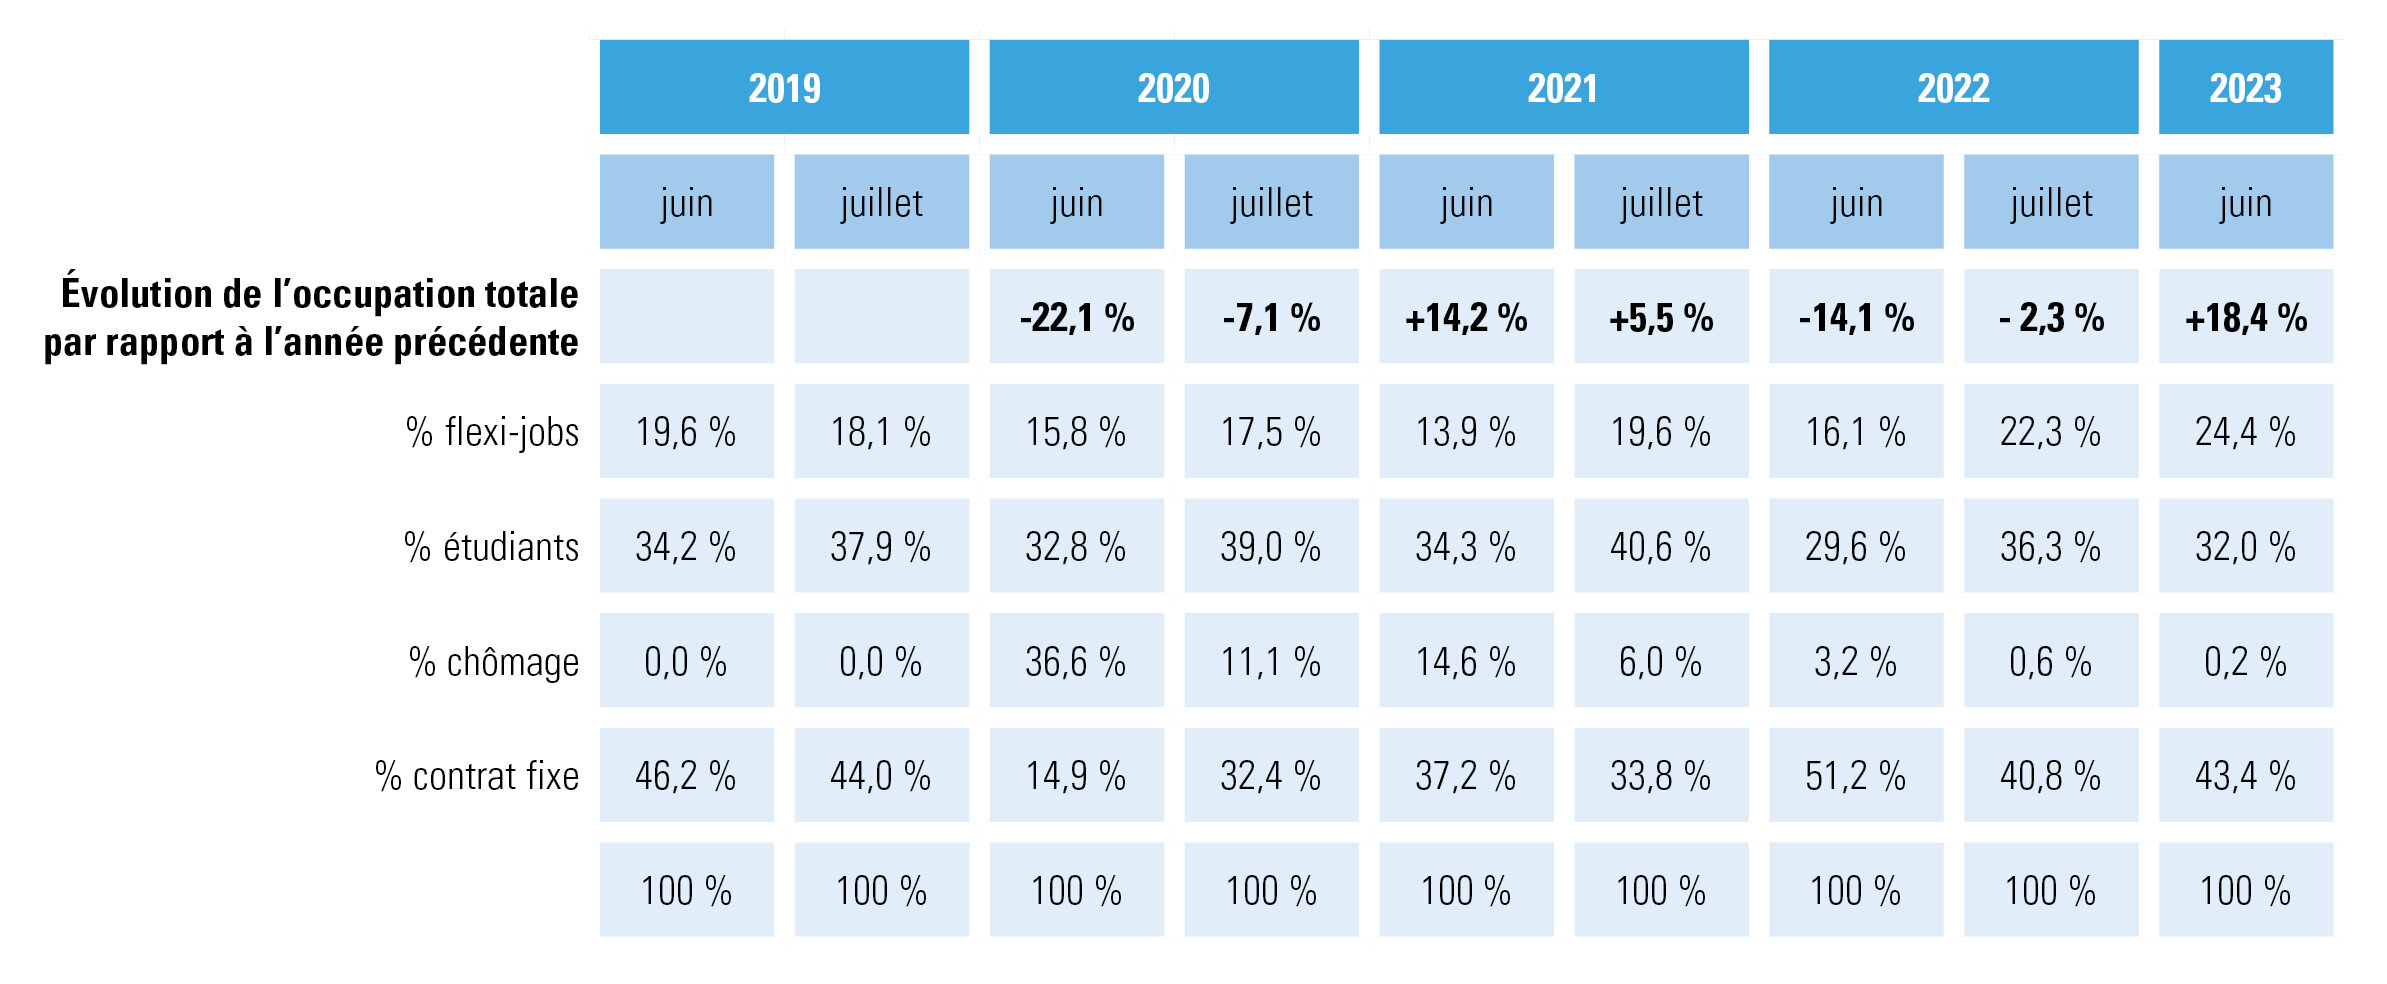 Évolution de l’occupation dans l’horeca en juin 2023 par rapport à juin 2022